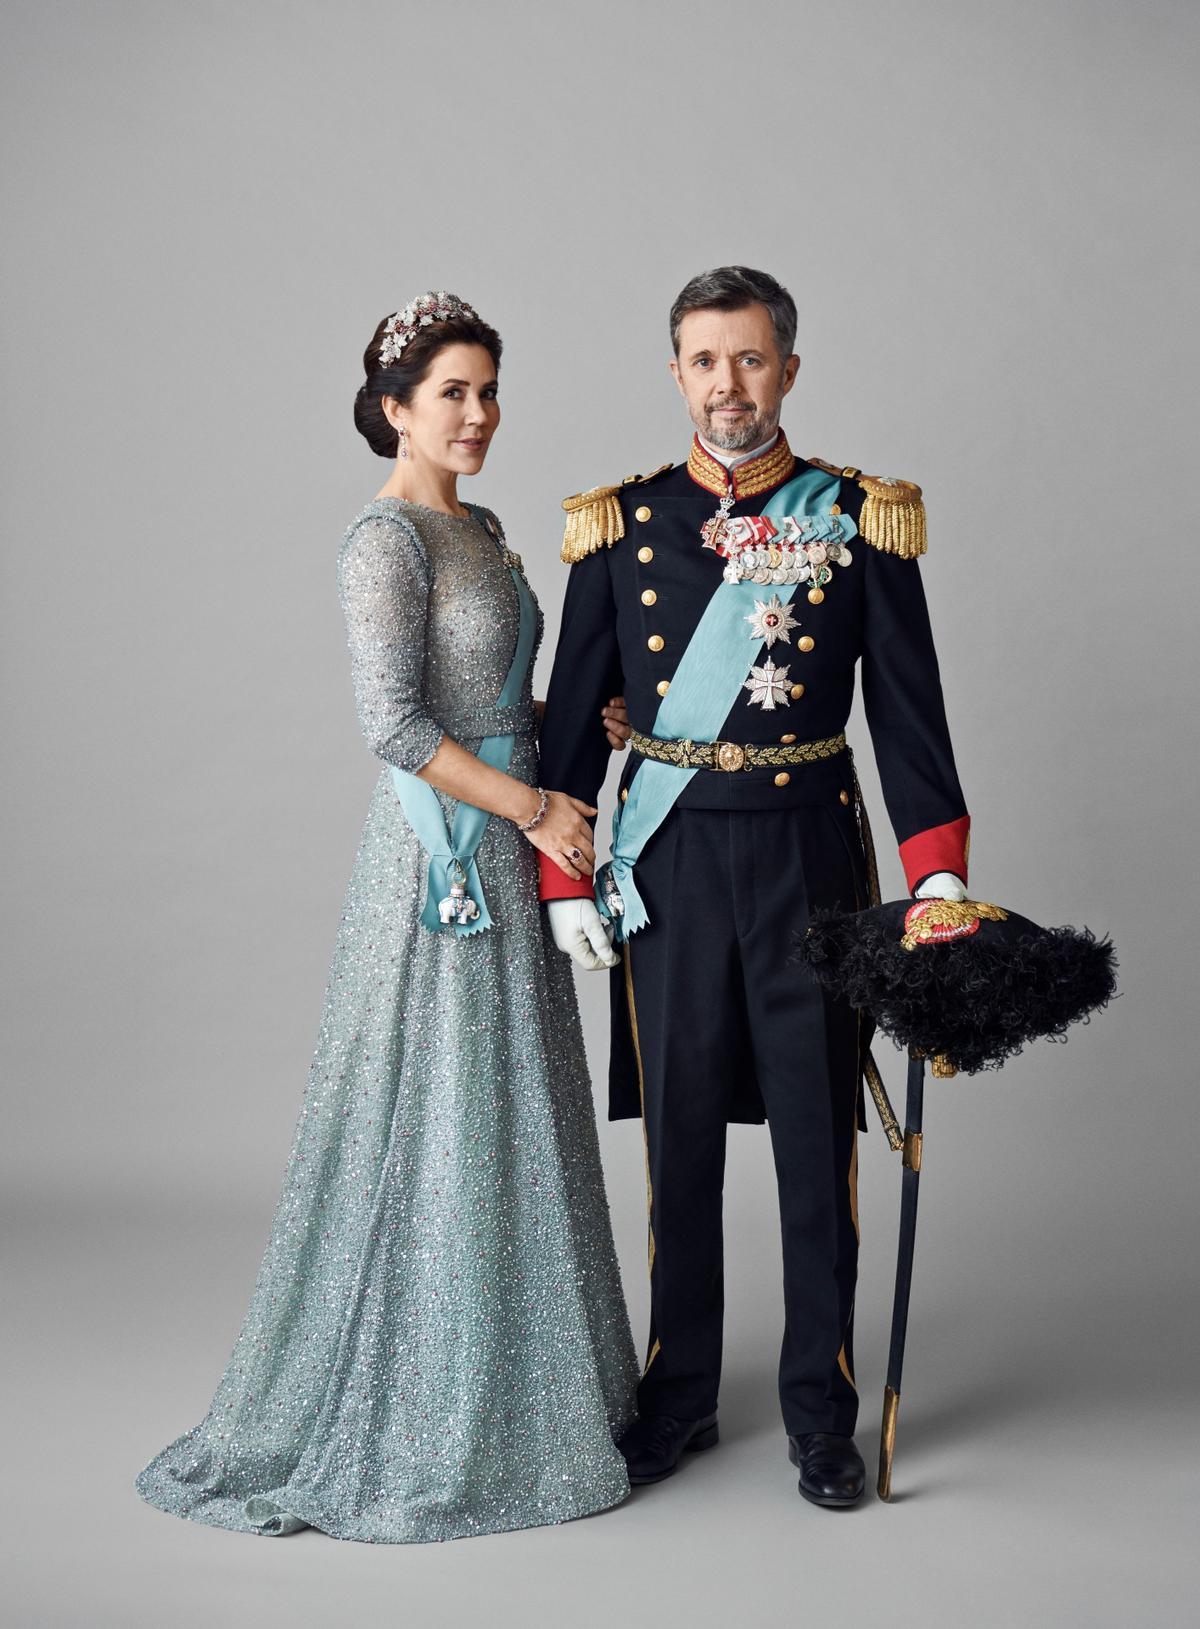 Retrato oficial de Federico y Mary que ha distribuido la casa real danesa horas antes de su proclamación como reyes.